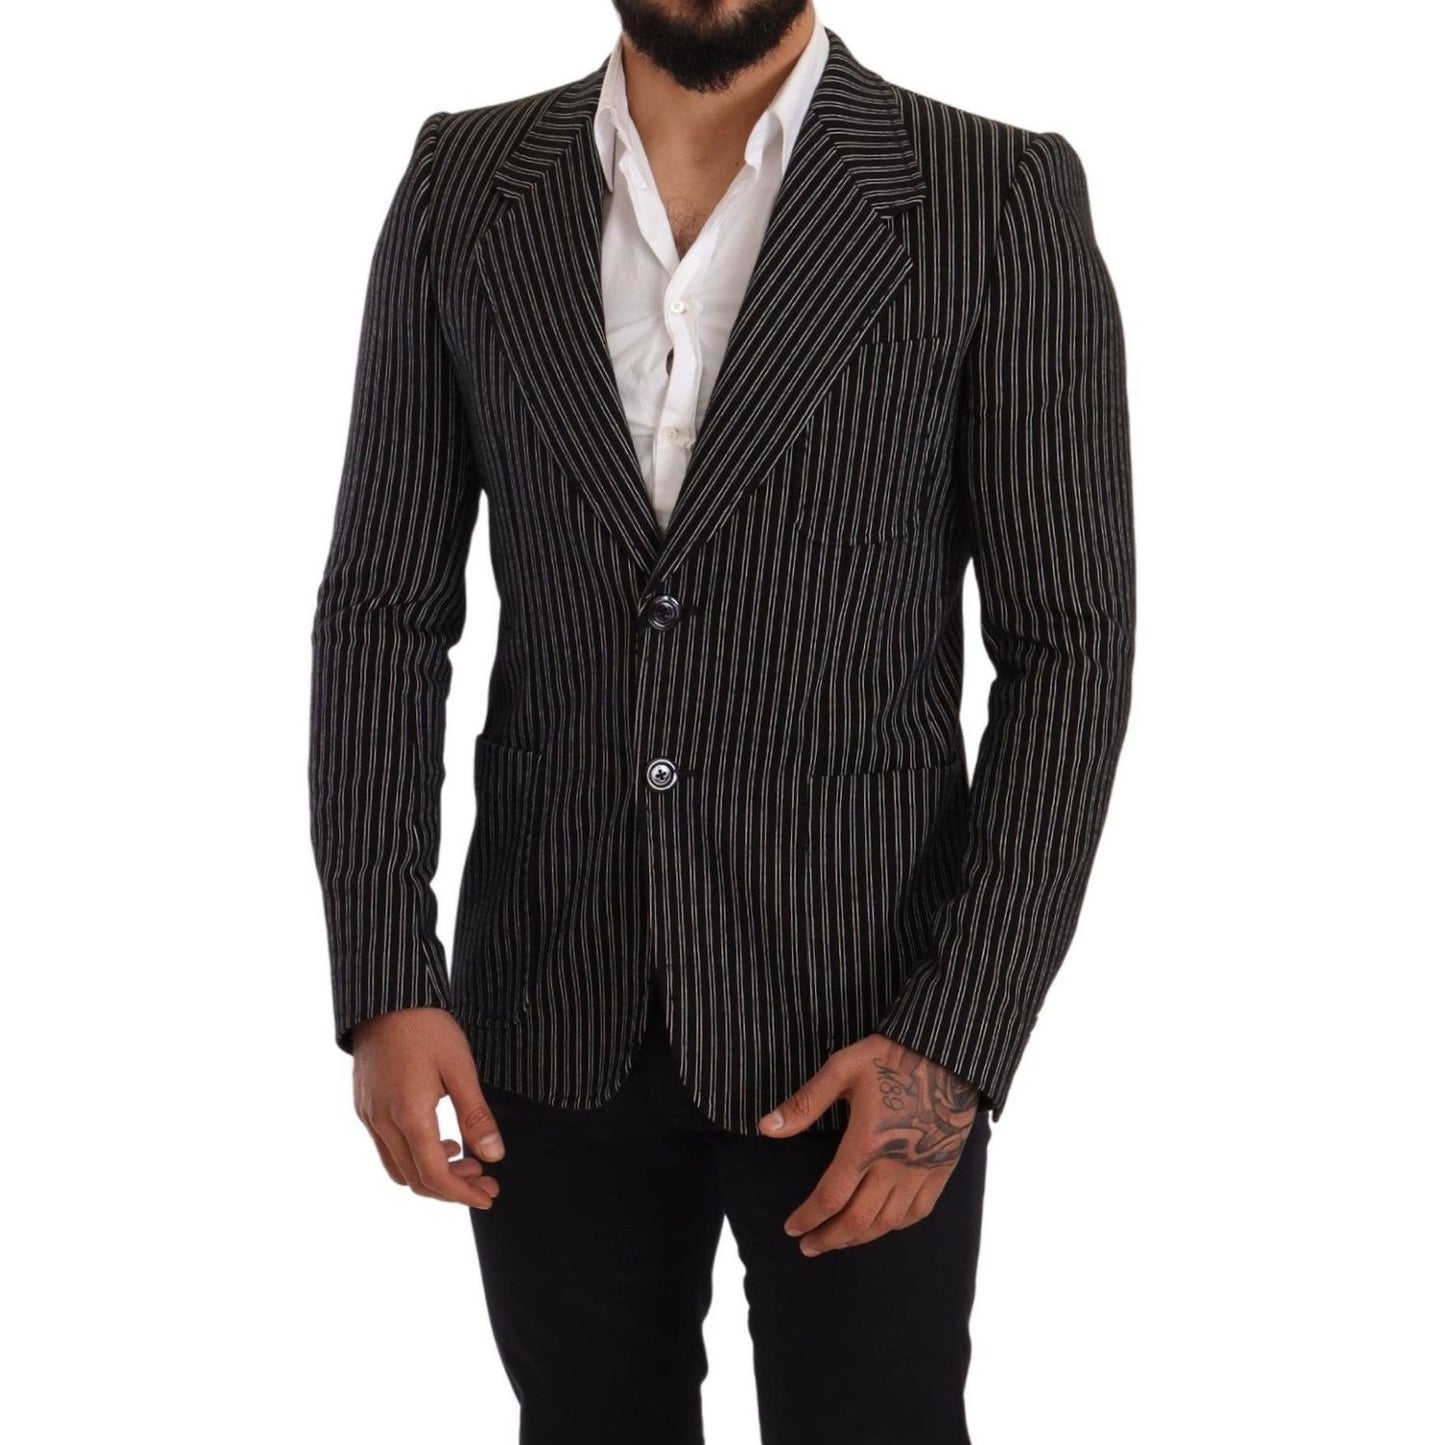 Dolce & Gabbana Elegant Black Striped Virgin Wool Blazer black-striped-slim-fit-wool-coat-blazer